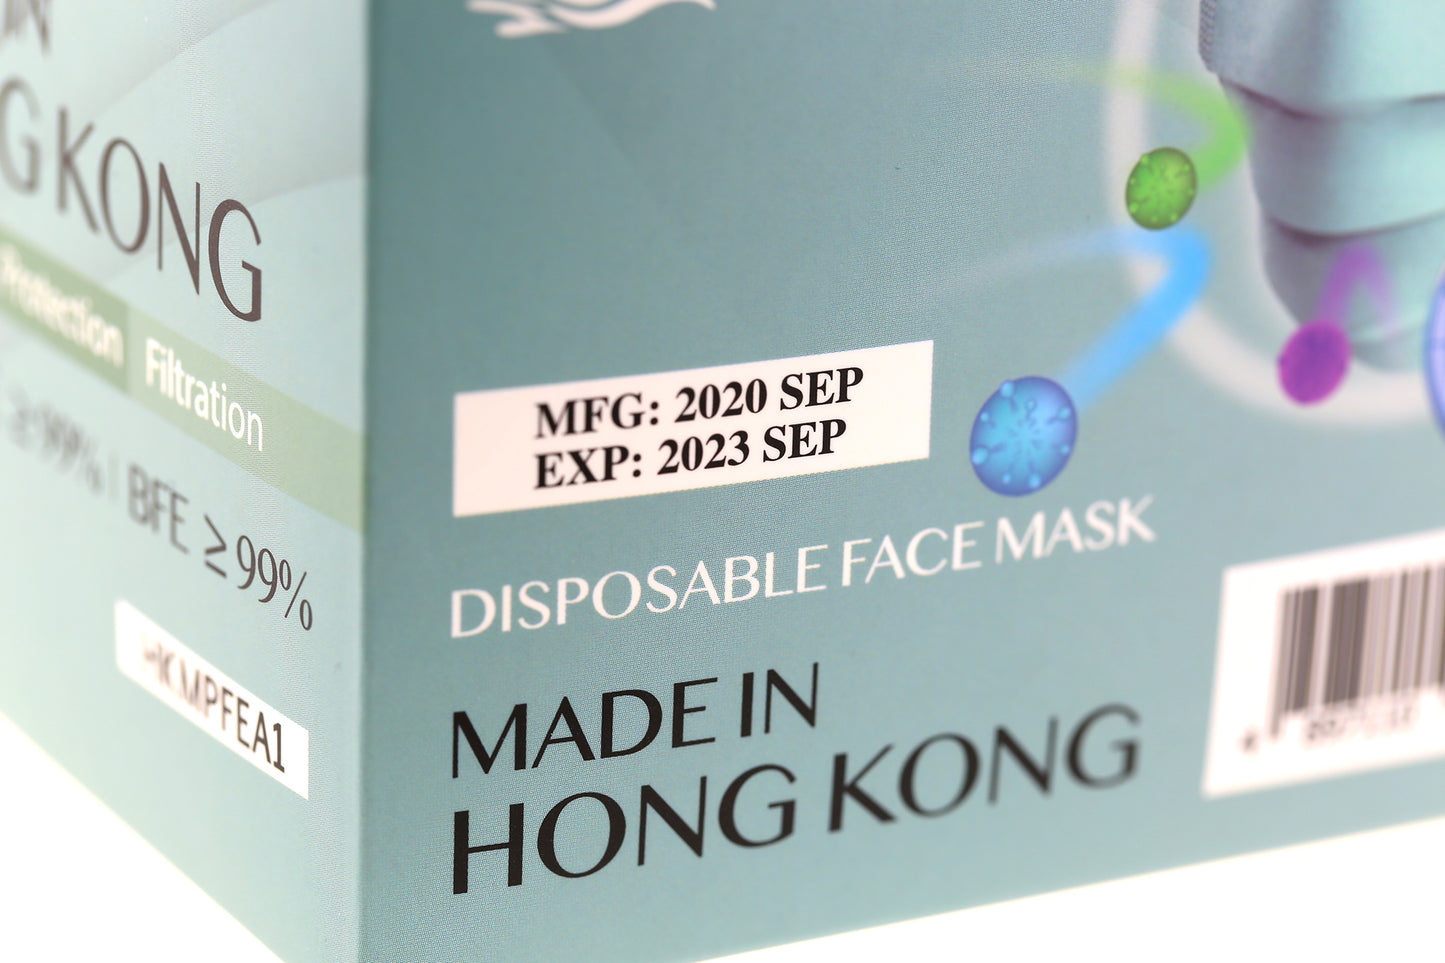 【 現貨 】Five Colours EN14683 Type IIR | ASTM Level 3 (50 pcs)【 Made in HongKong 】